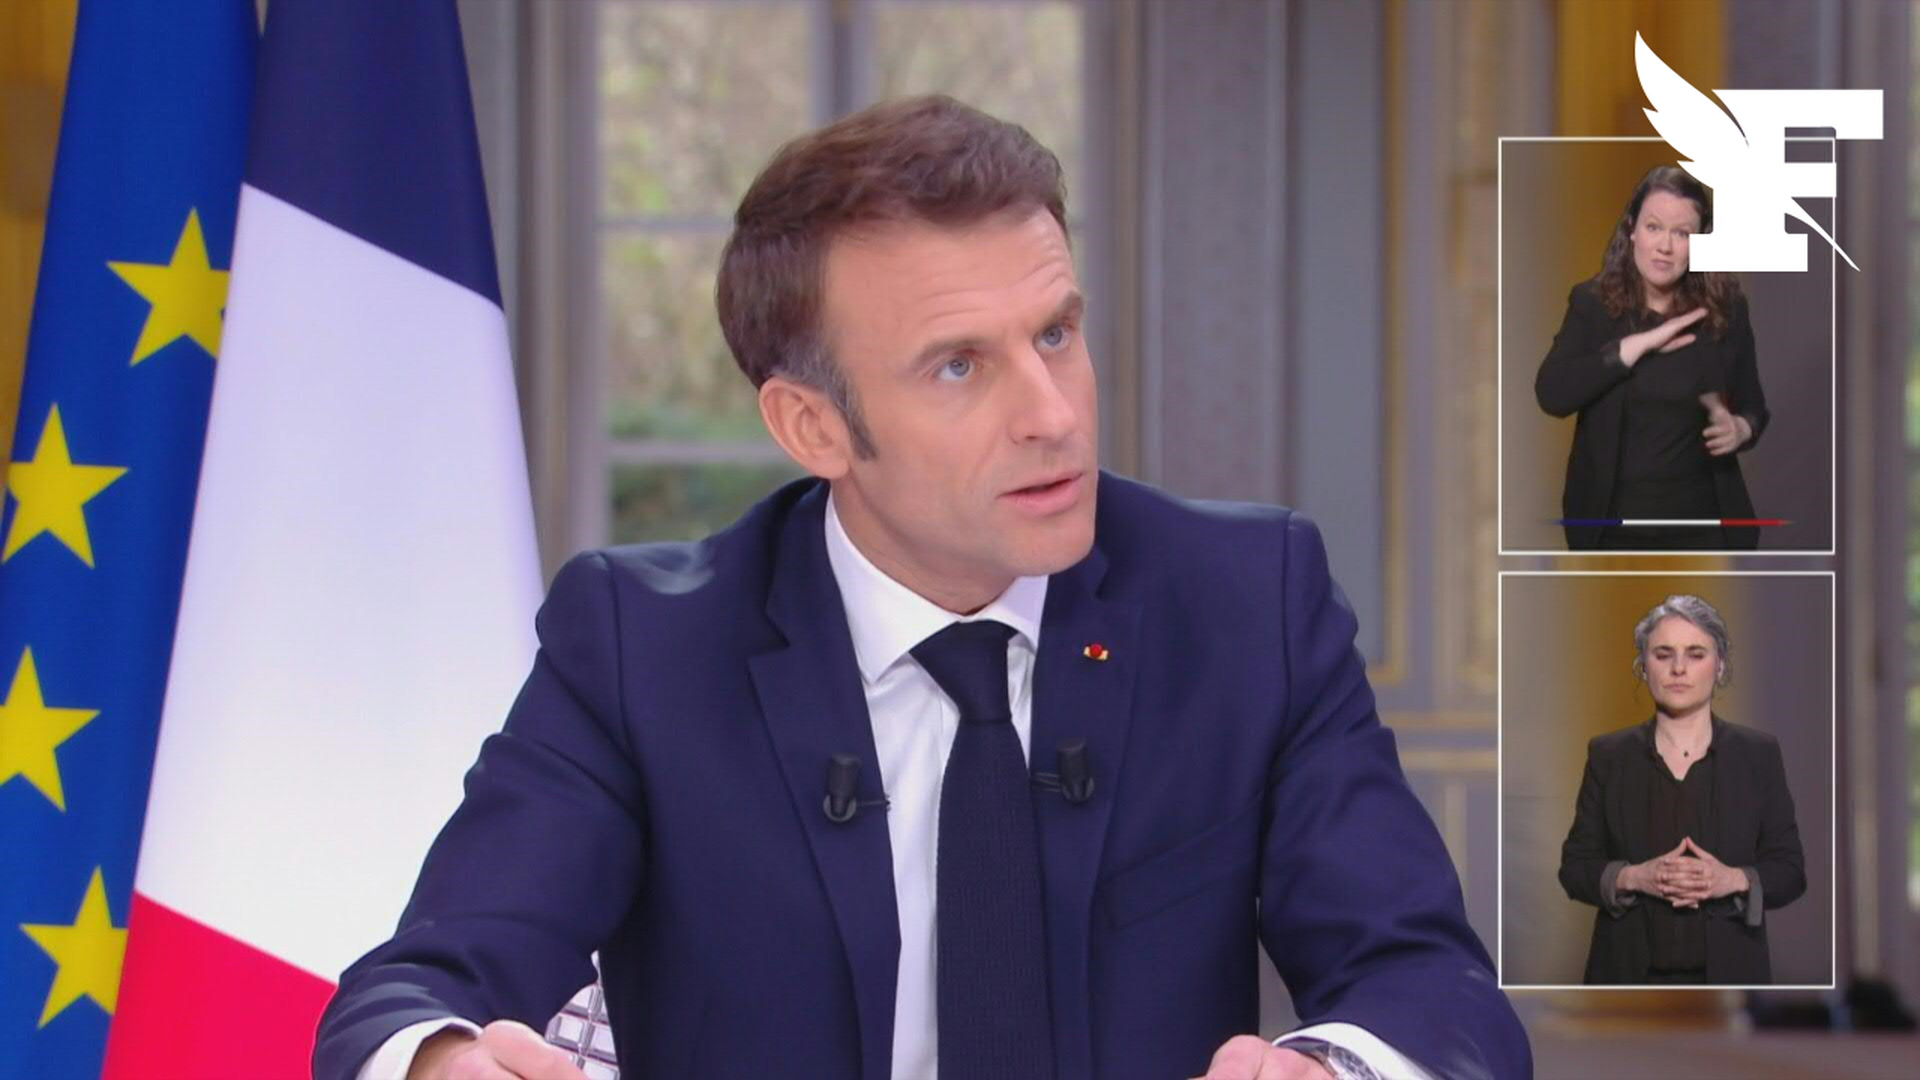 Réforme des retraites: qu'a dit Emmanuel Macron lors de son interview télévisée ?